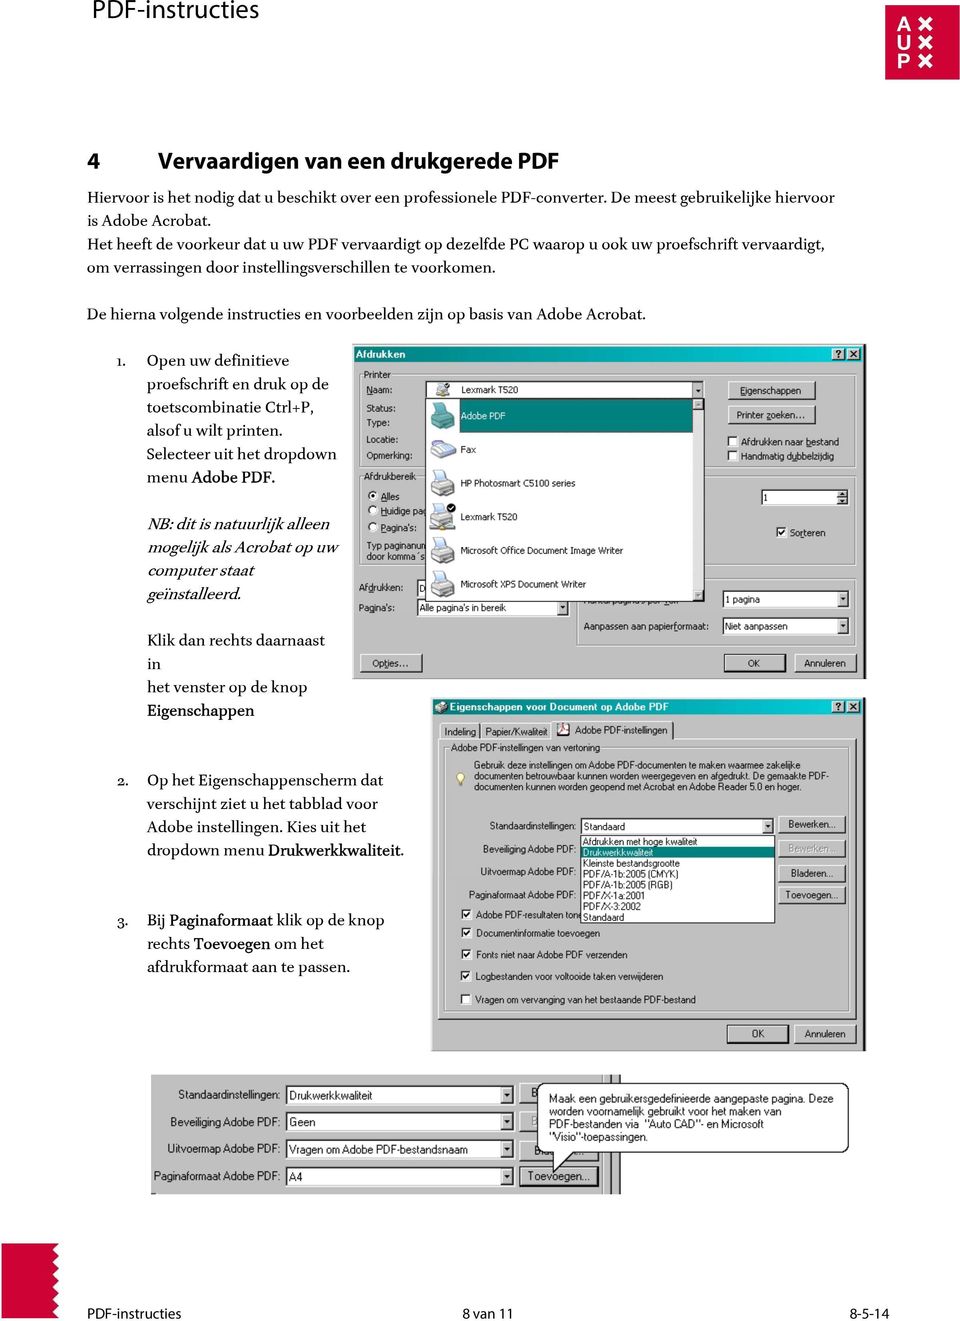 De hierna volgende instructies en voorbeelden zijn op basis van Adobe Acrobat. 1. Open uw definitieve proefschrift en druk op de toetscombinatie Ctrl+P, alsof u wilt printen.